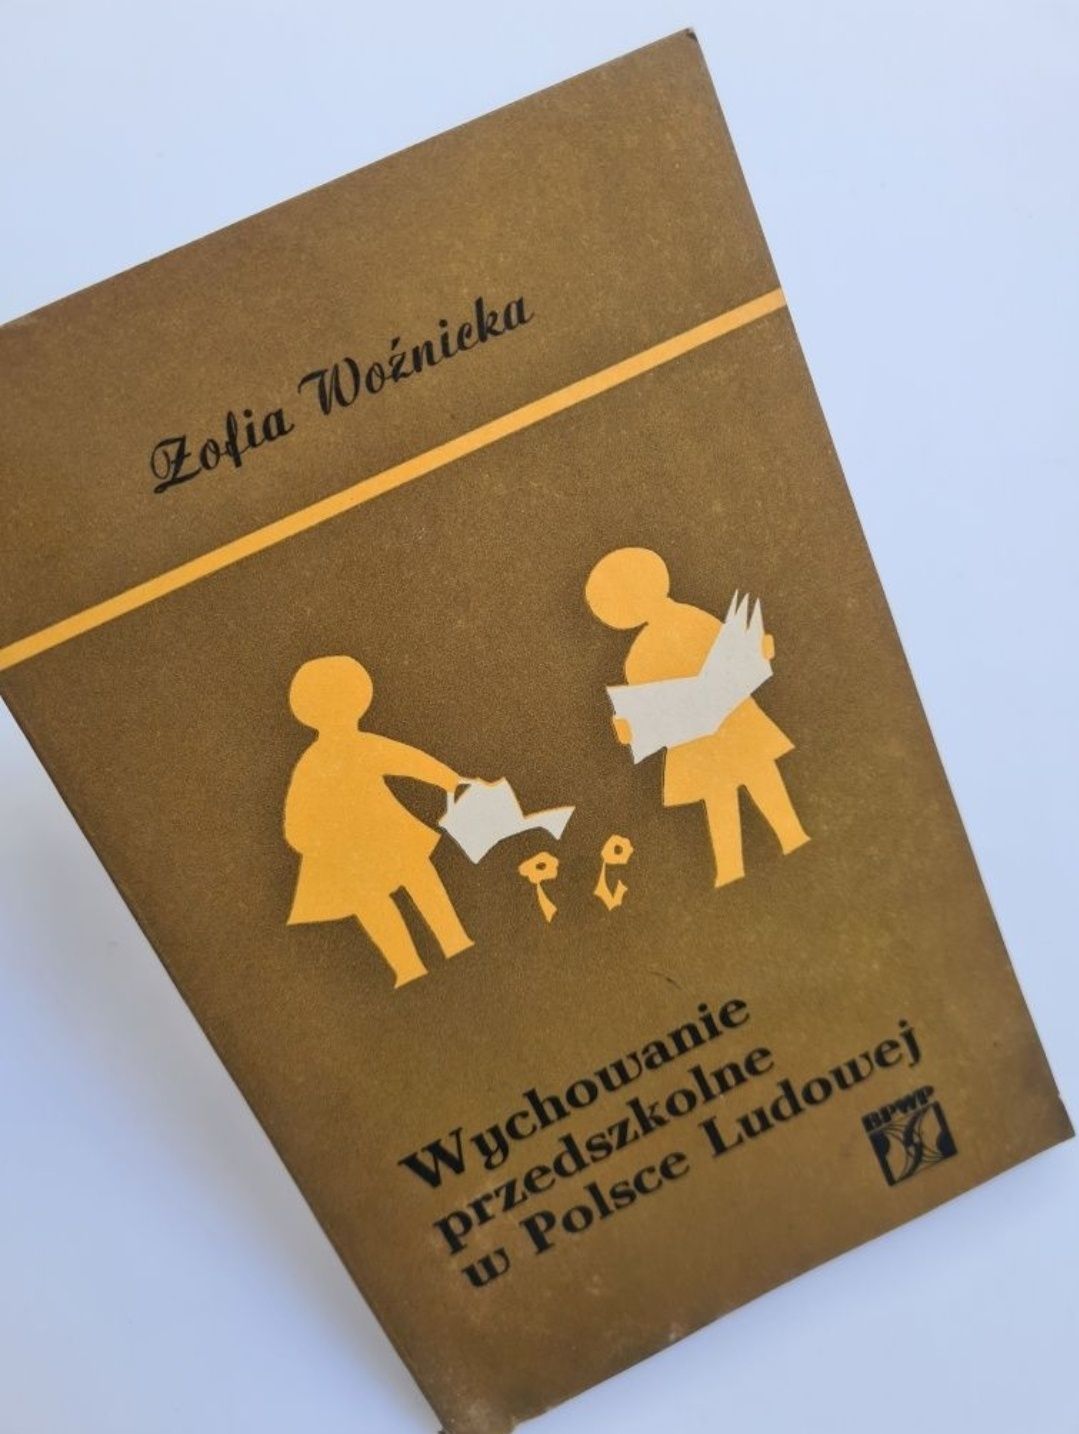 Wychowanie przedszkolne w Polsce Ludowej - Zofia Woźnicka